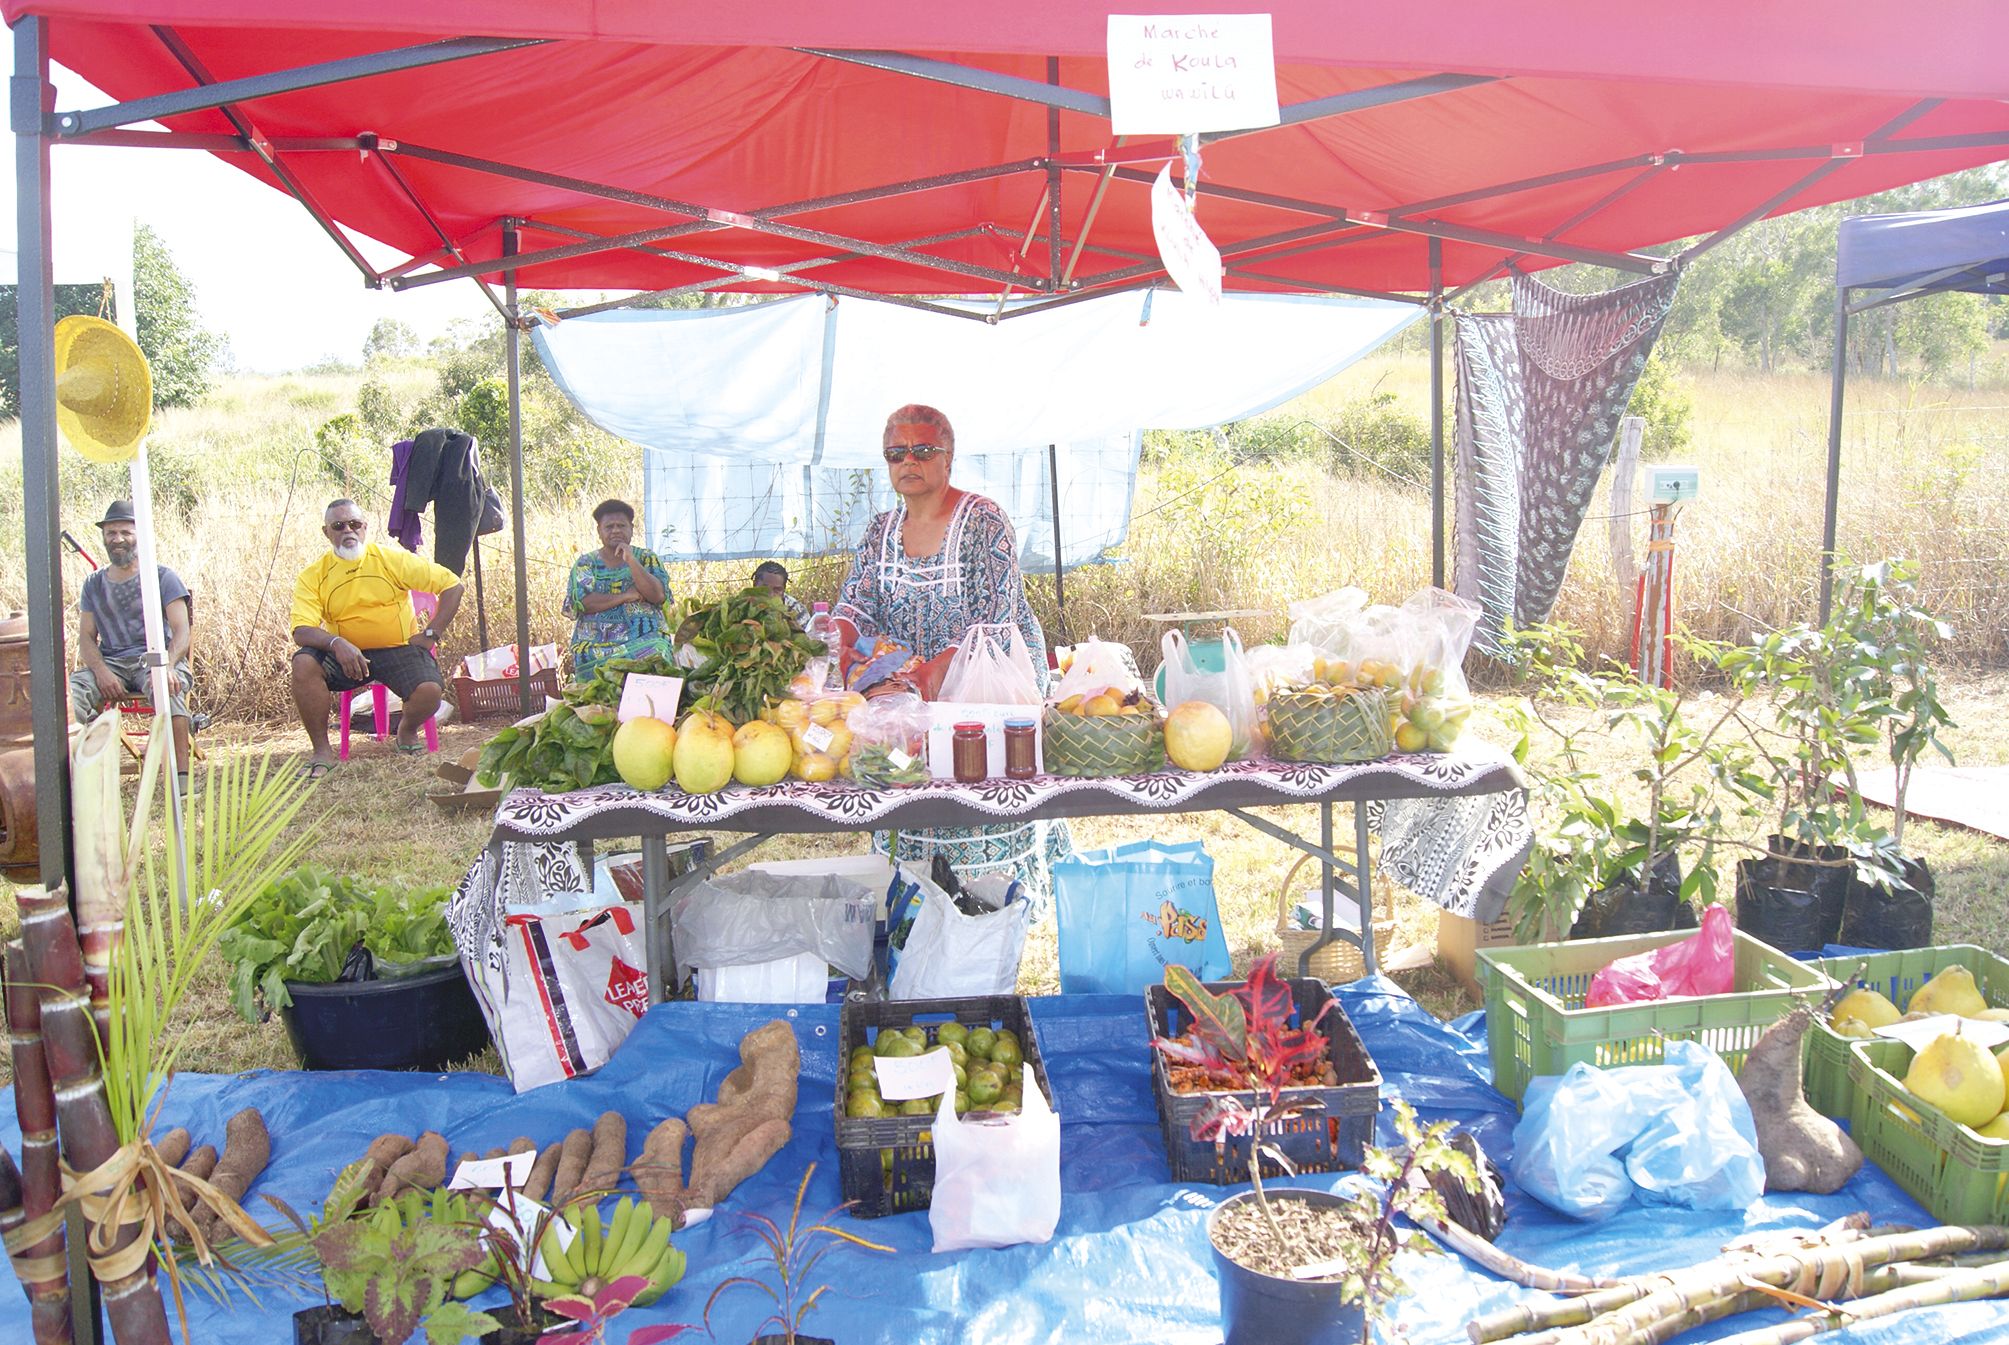 Le marché de Poya s’est déroulé en même temps que la fête. En plus de la fameuse cochonnaille, des fruits et des légumes de saison étaient proposés sur les étals.